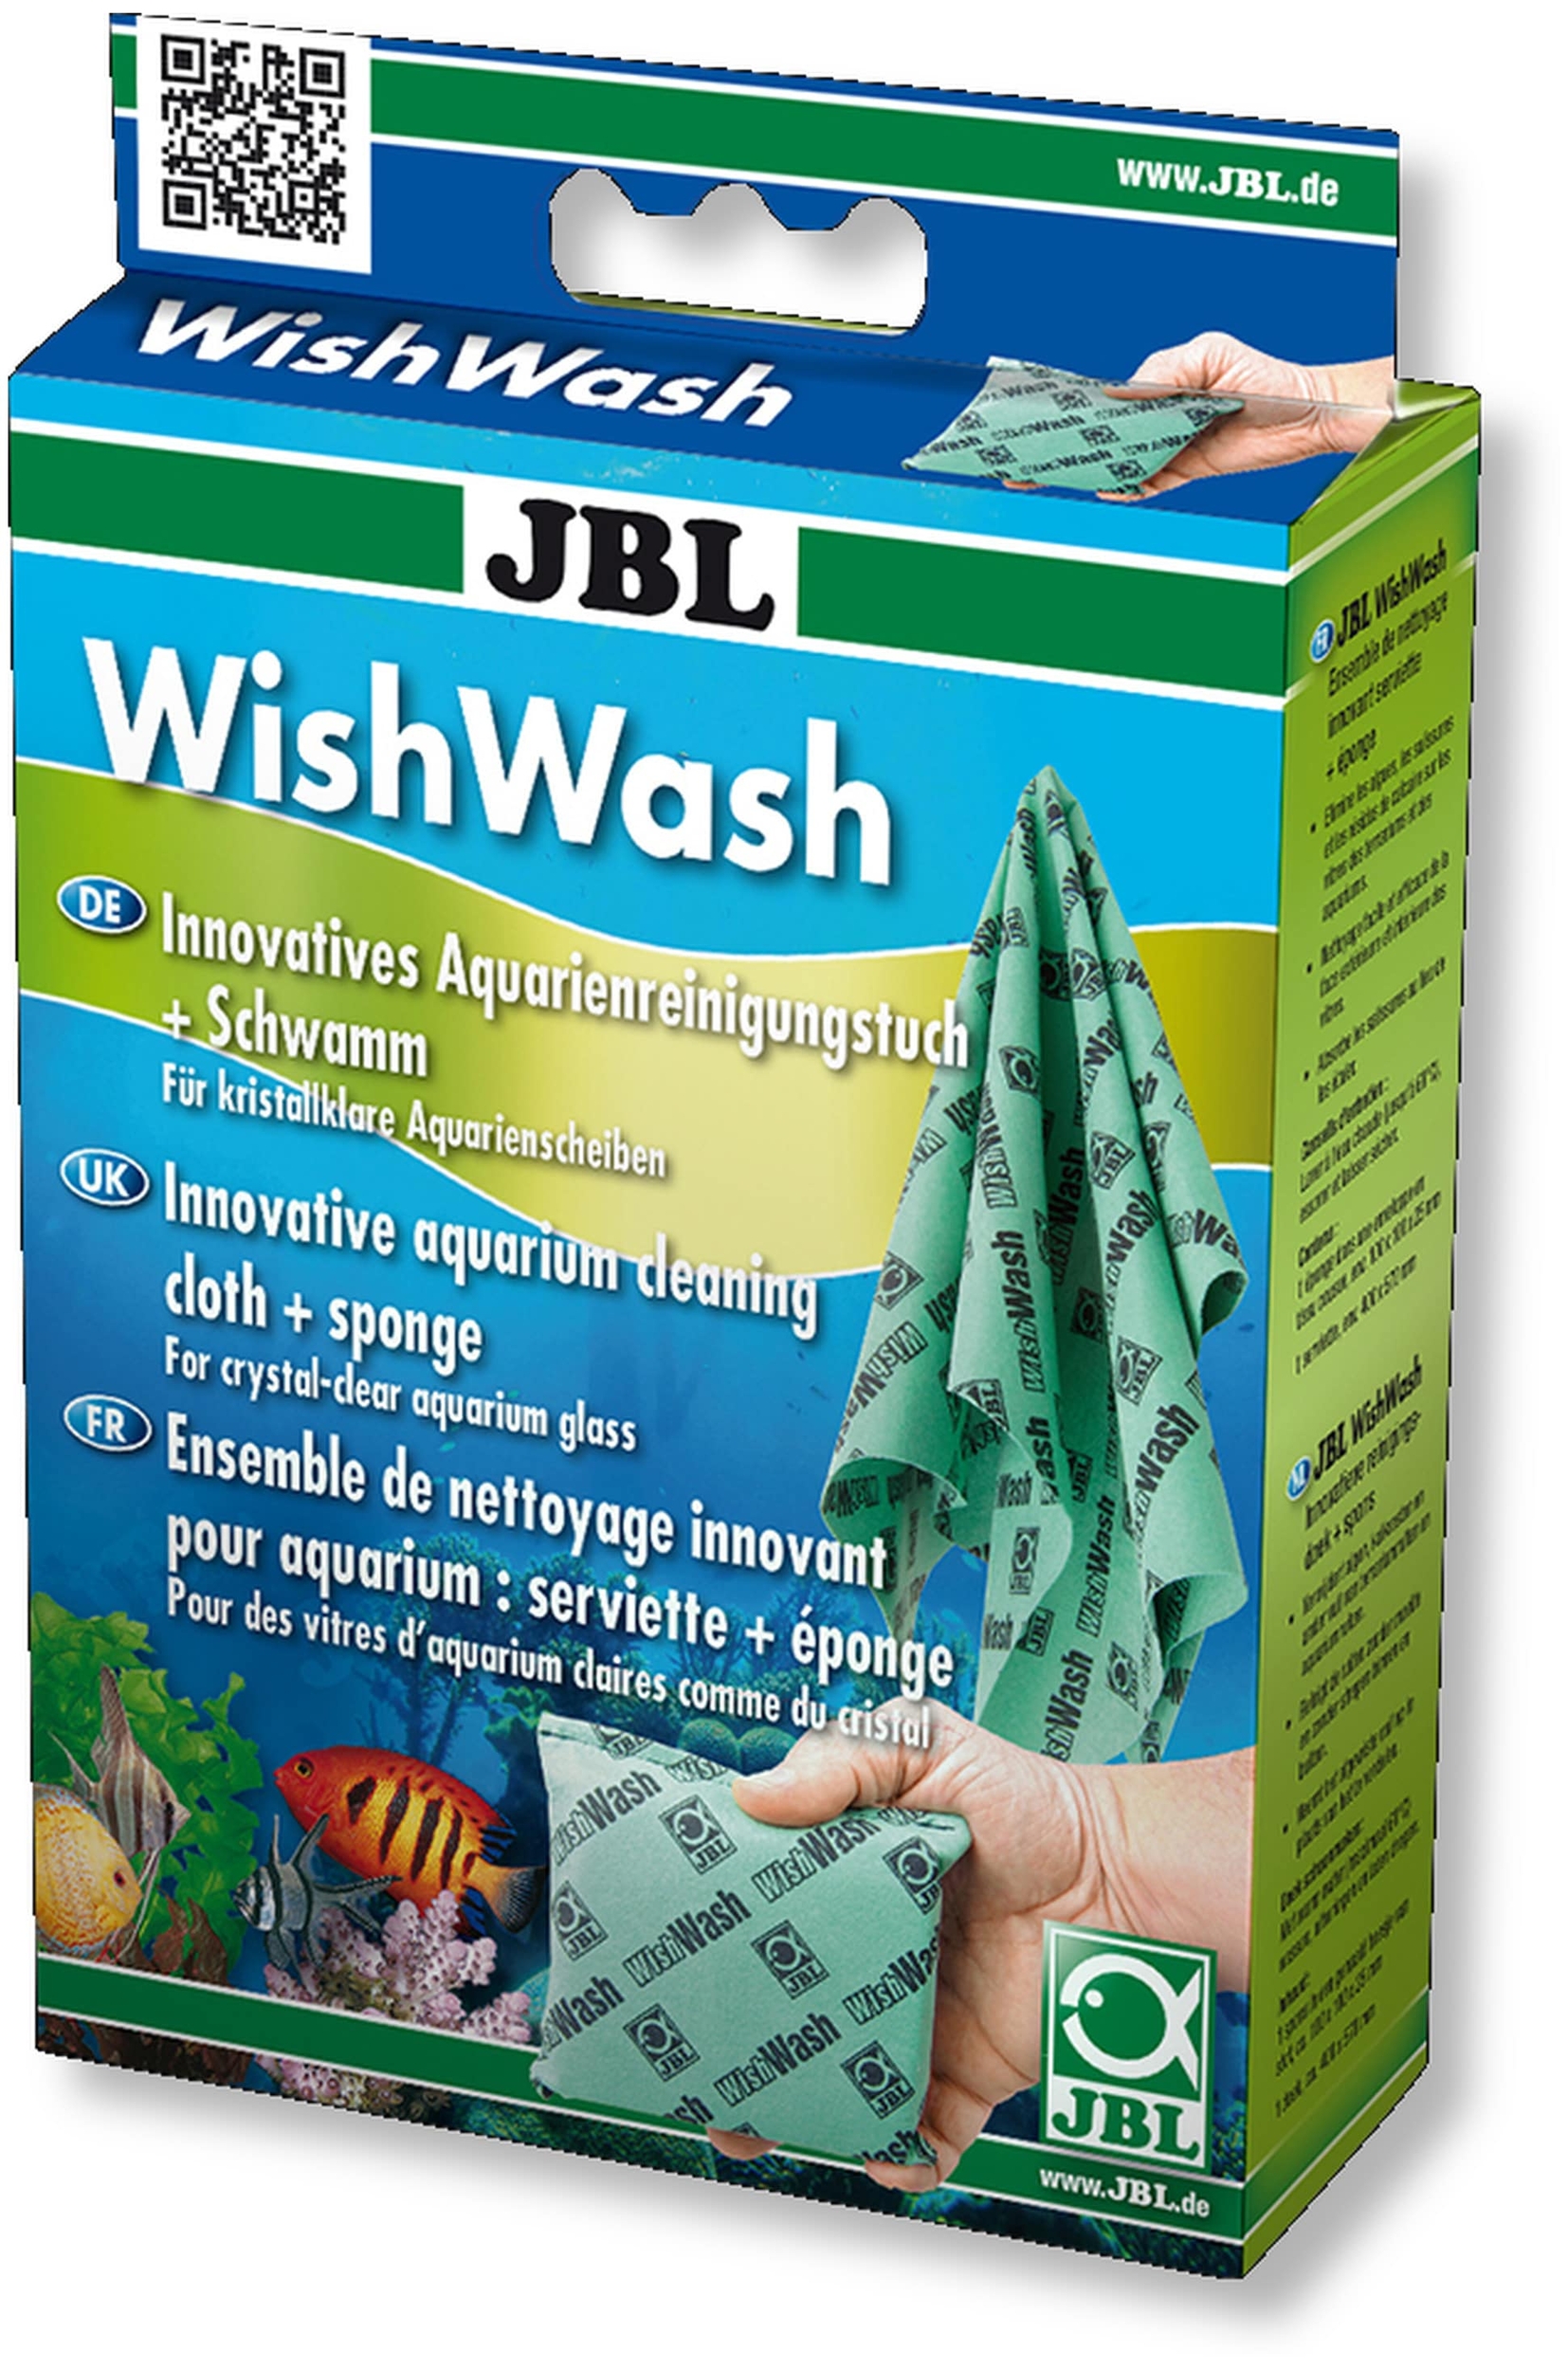 jbl-wishwash-aqua-set-de-nettoyage-innovant-pour-aquarium-eponge-serviette-min